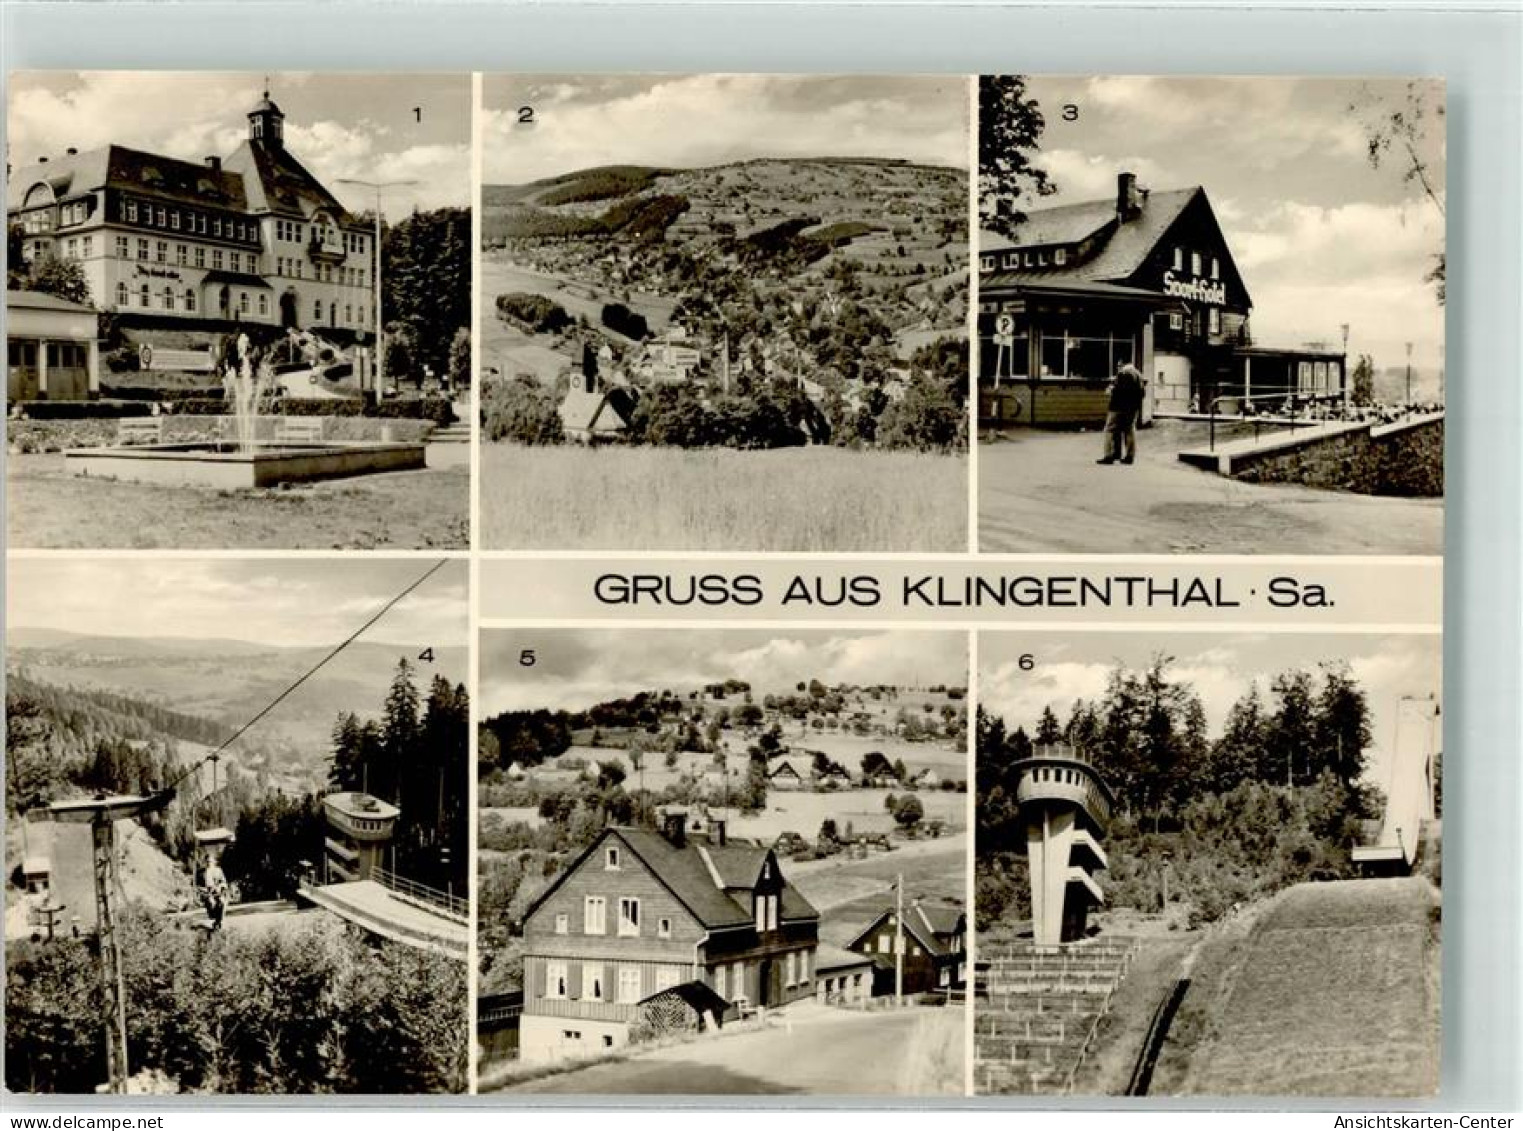 39521411 - Klingenthal - Klingenthal